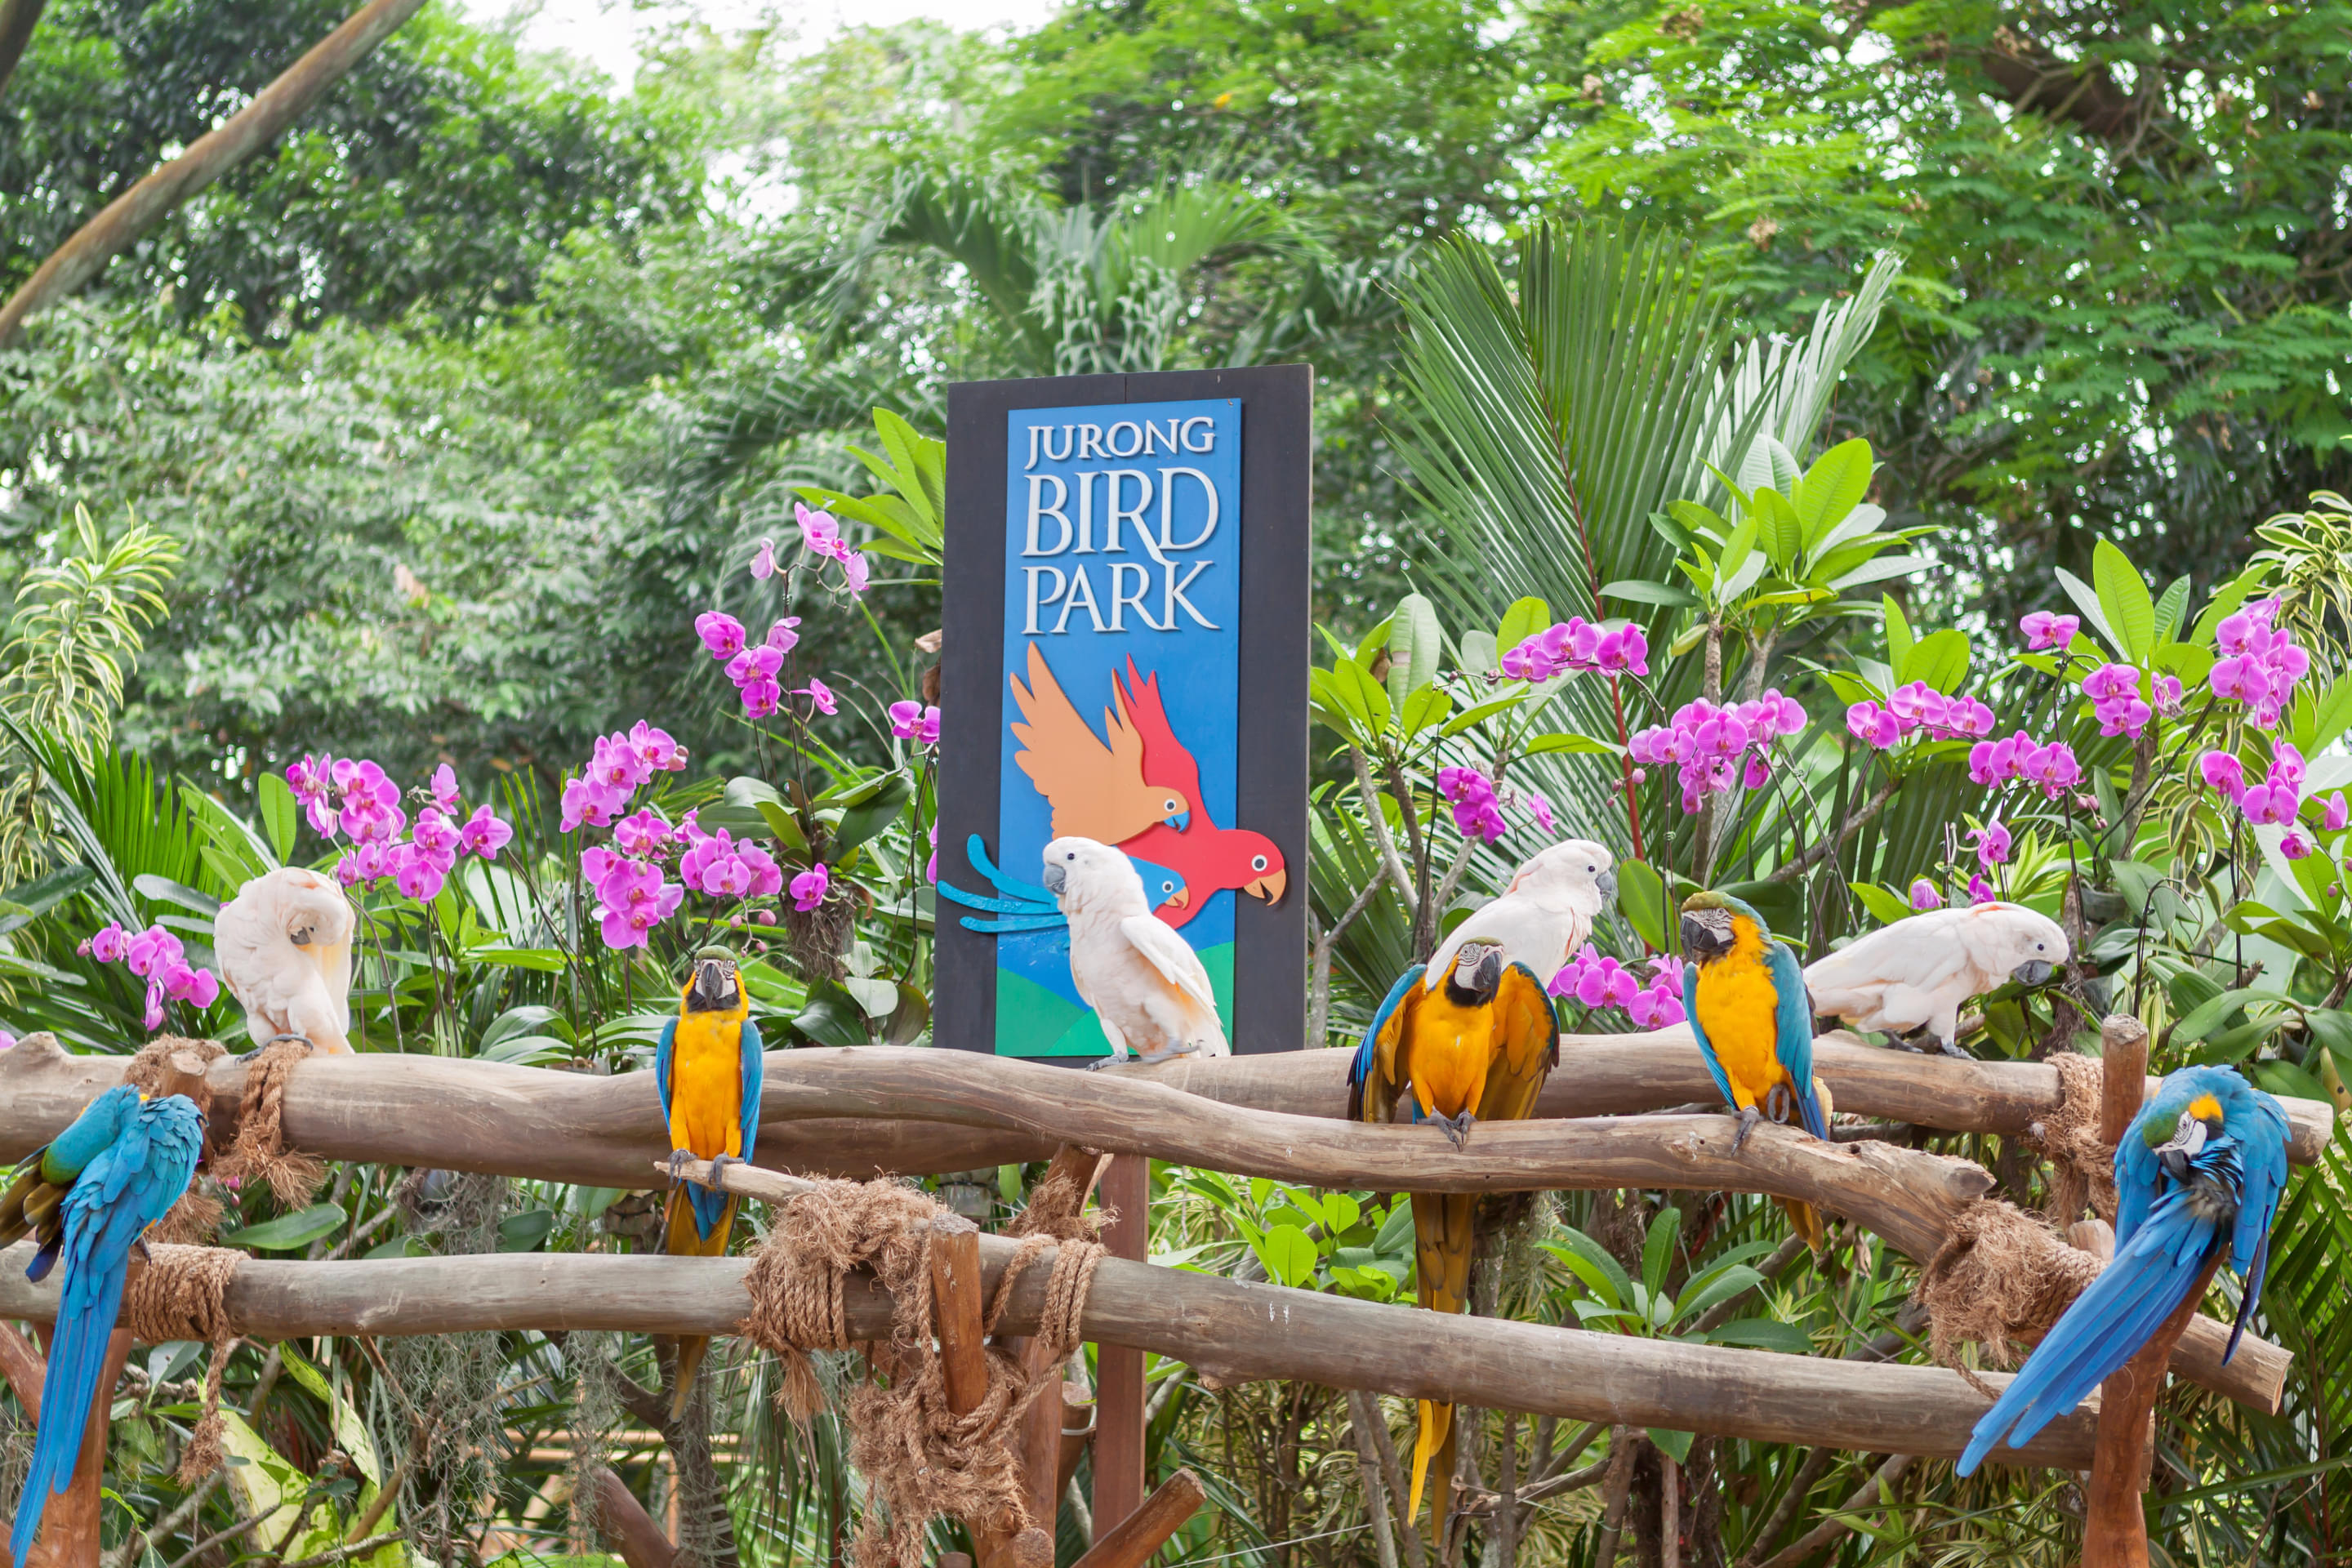 Jurong Bird Park Overview